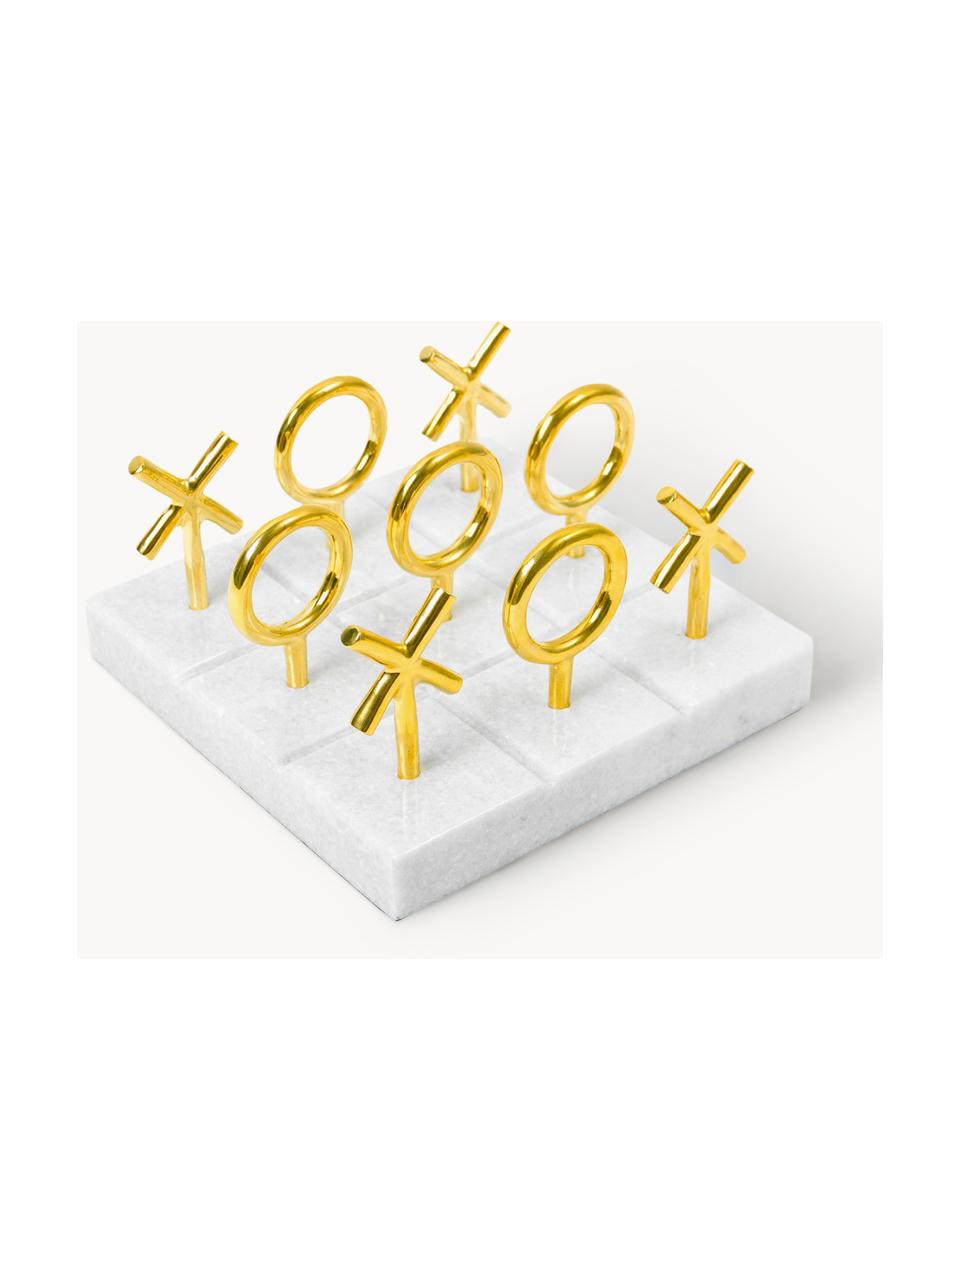 Mramorová desková hra Tic Tac Toe, Zlatá, bílá, mramorovaná, Š 18 cm, V 10 cm